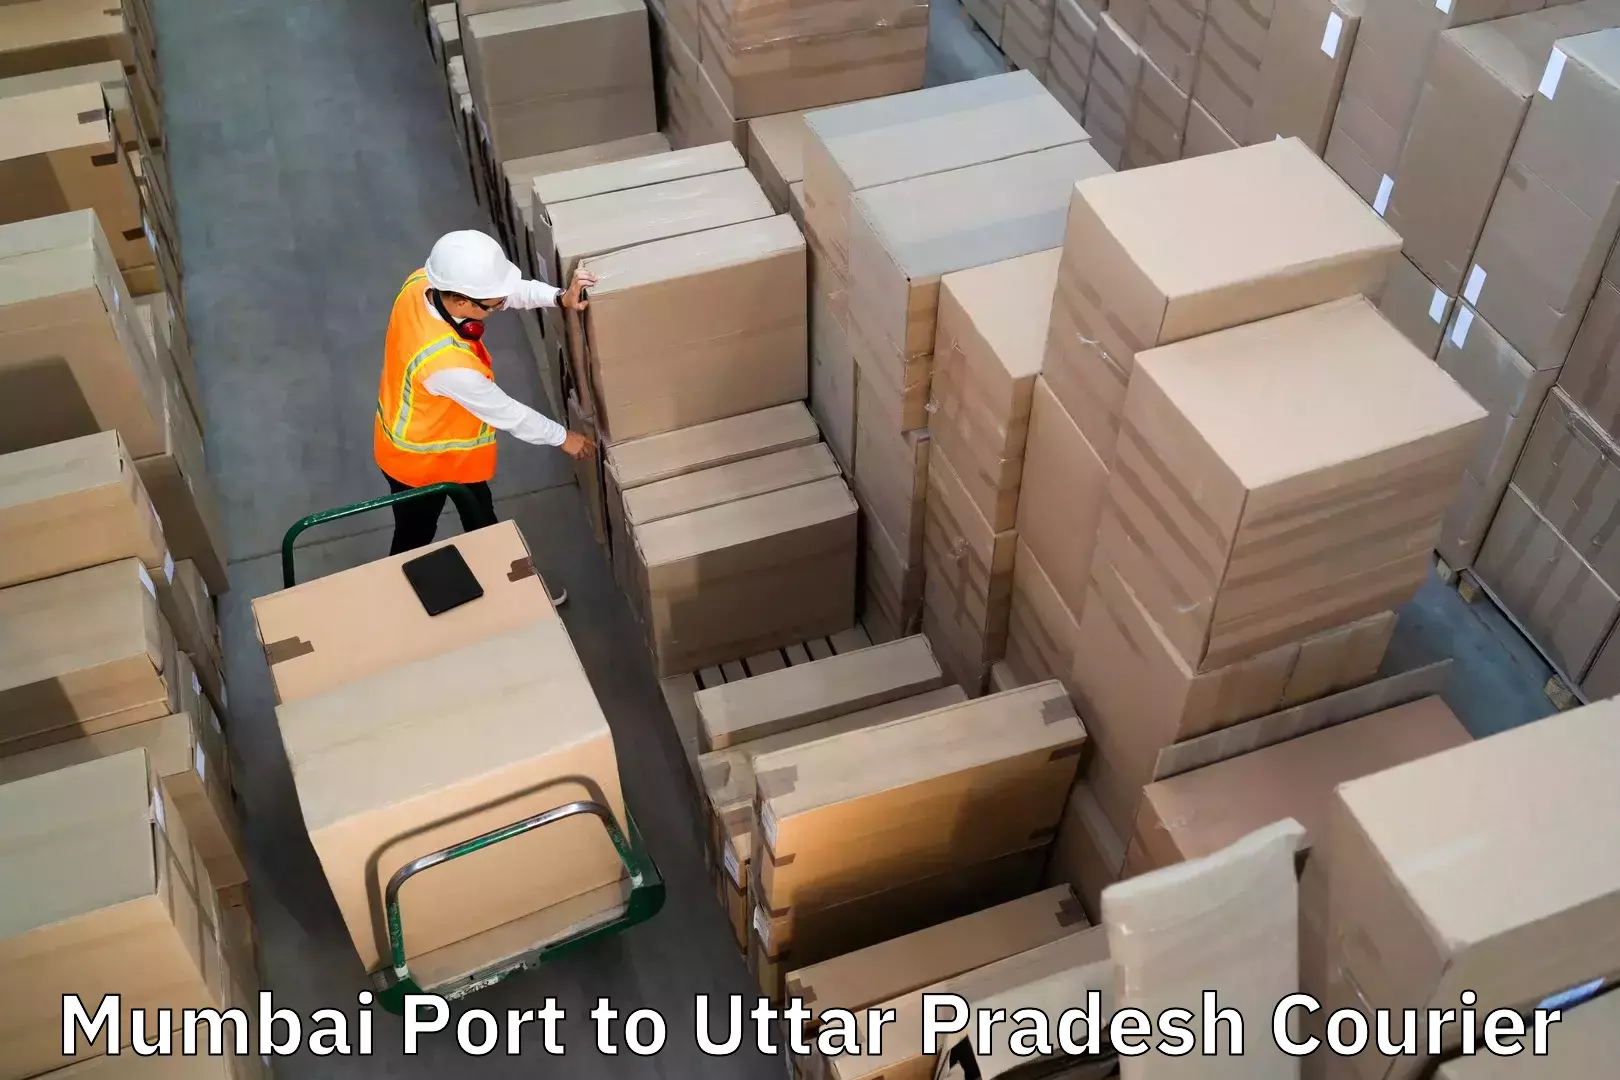 Luggage dispatch service Mumbai Port to Orai